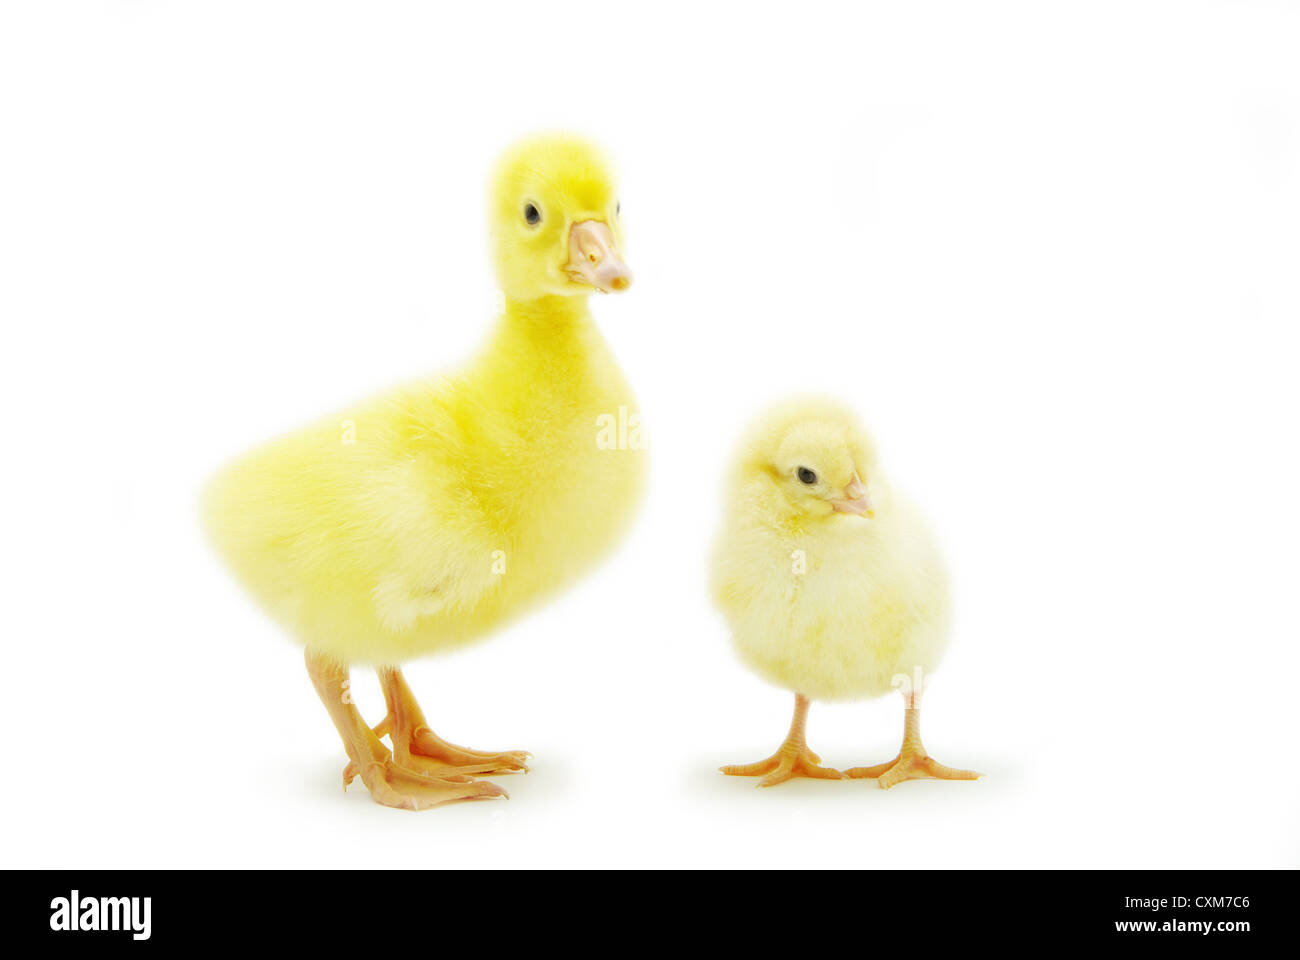 Piccolo Grazioso baby chicken e gosling isolati su sfondo bianco Foto Stock